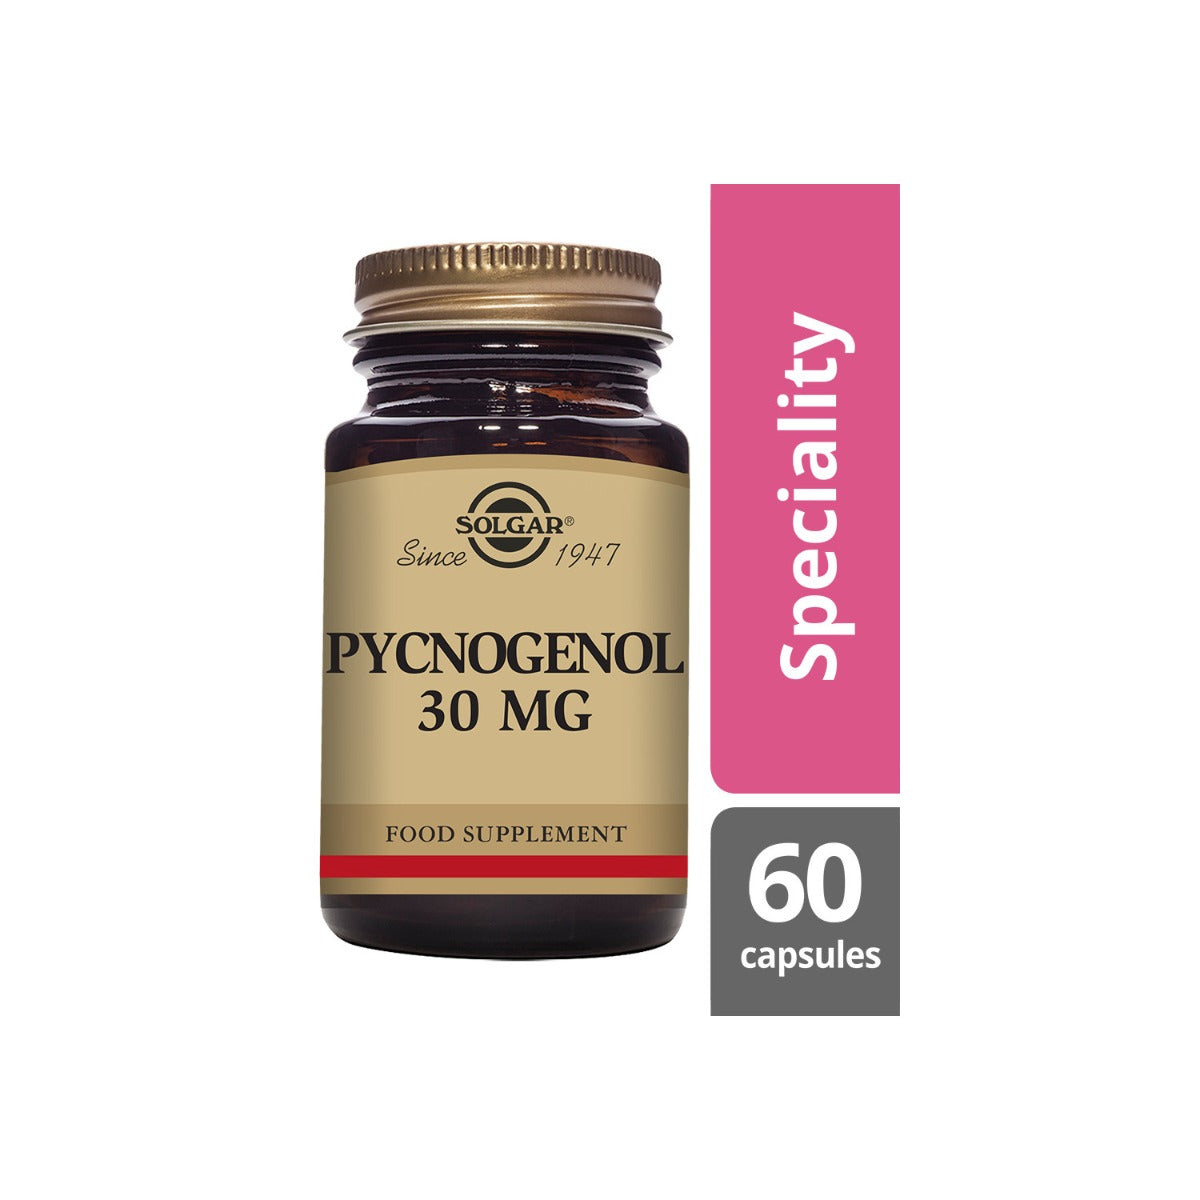 Solgar® Pycnogenol 30 mg Vegetable Capsules - Pack of 60